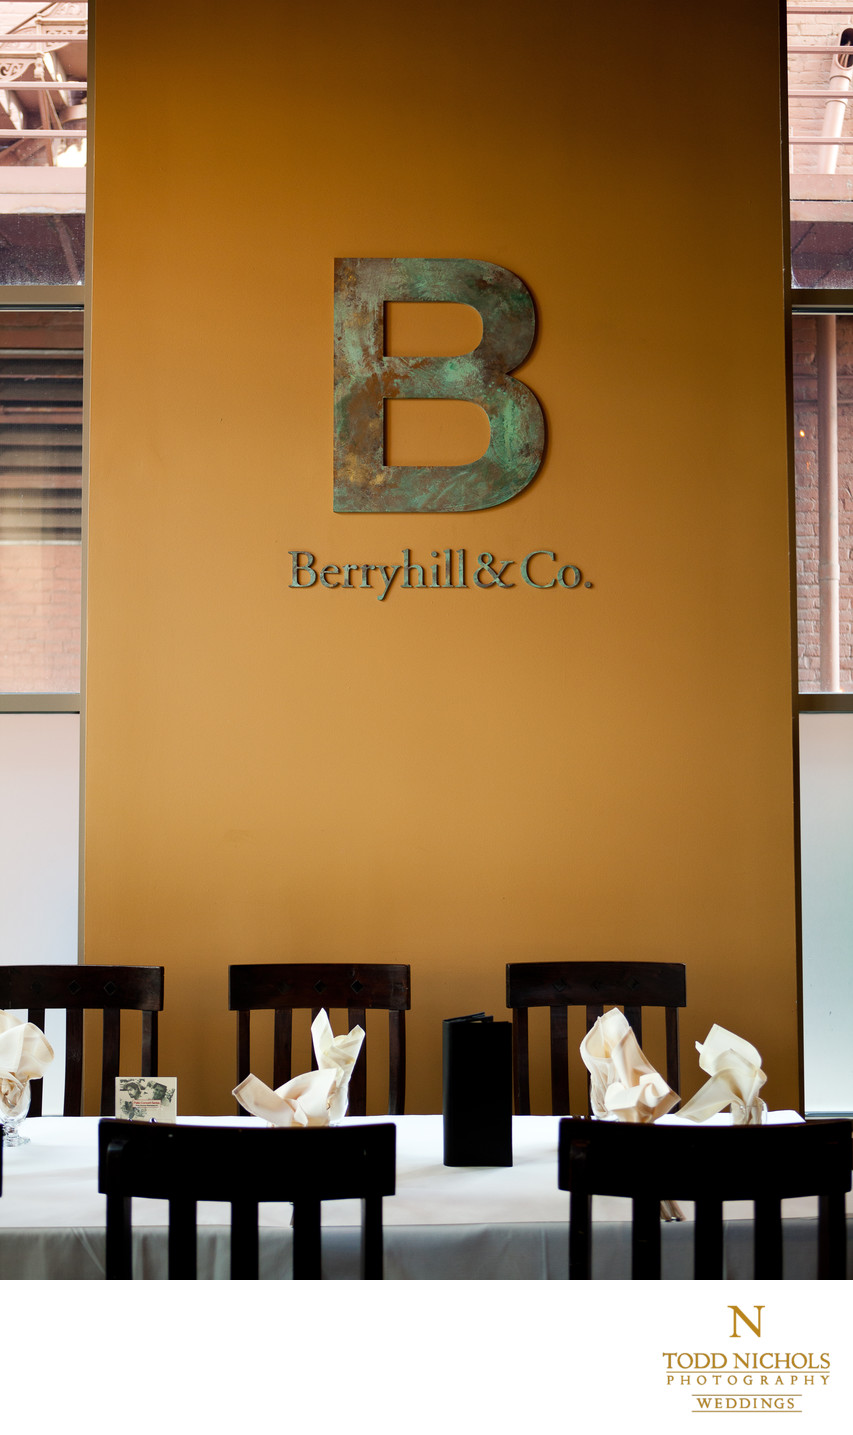 Berryhill Restaurant 